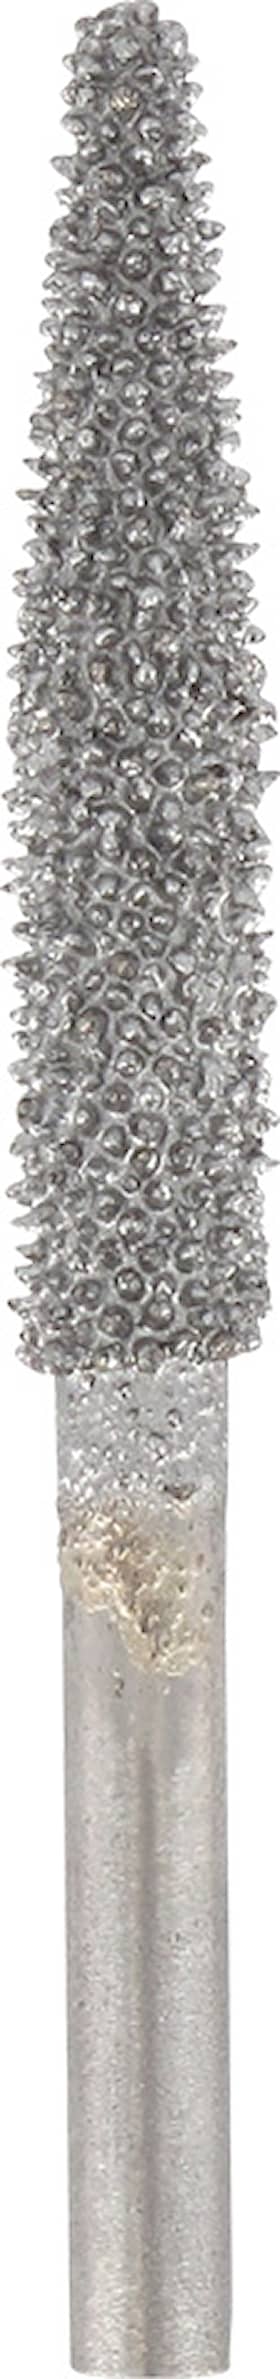 Dremel Tungsten karbidskærer med strukturerede tænder spydformet 6,4 mm (9931)